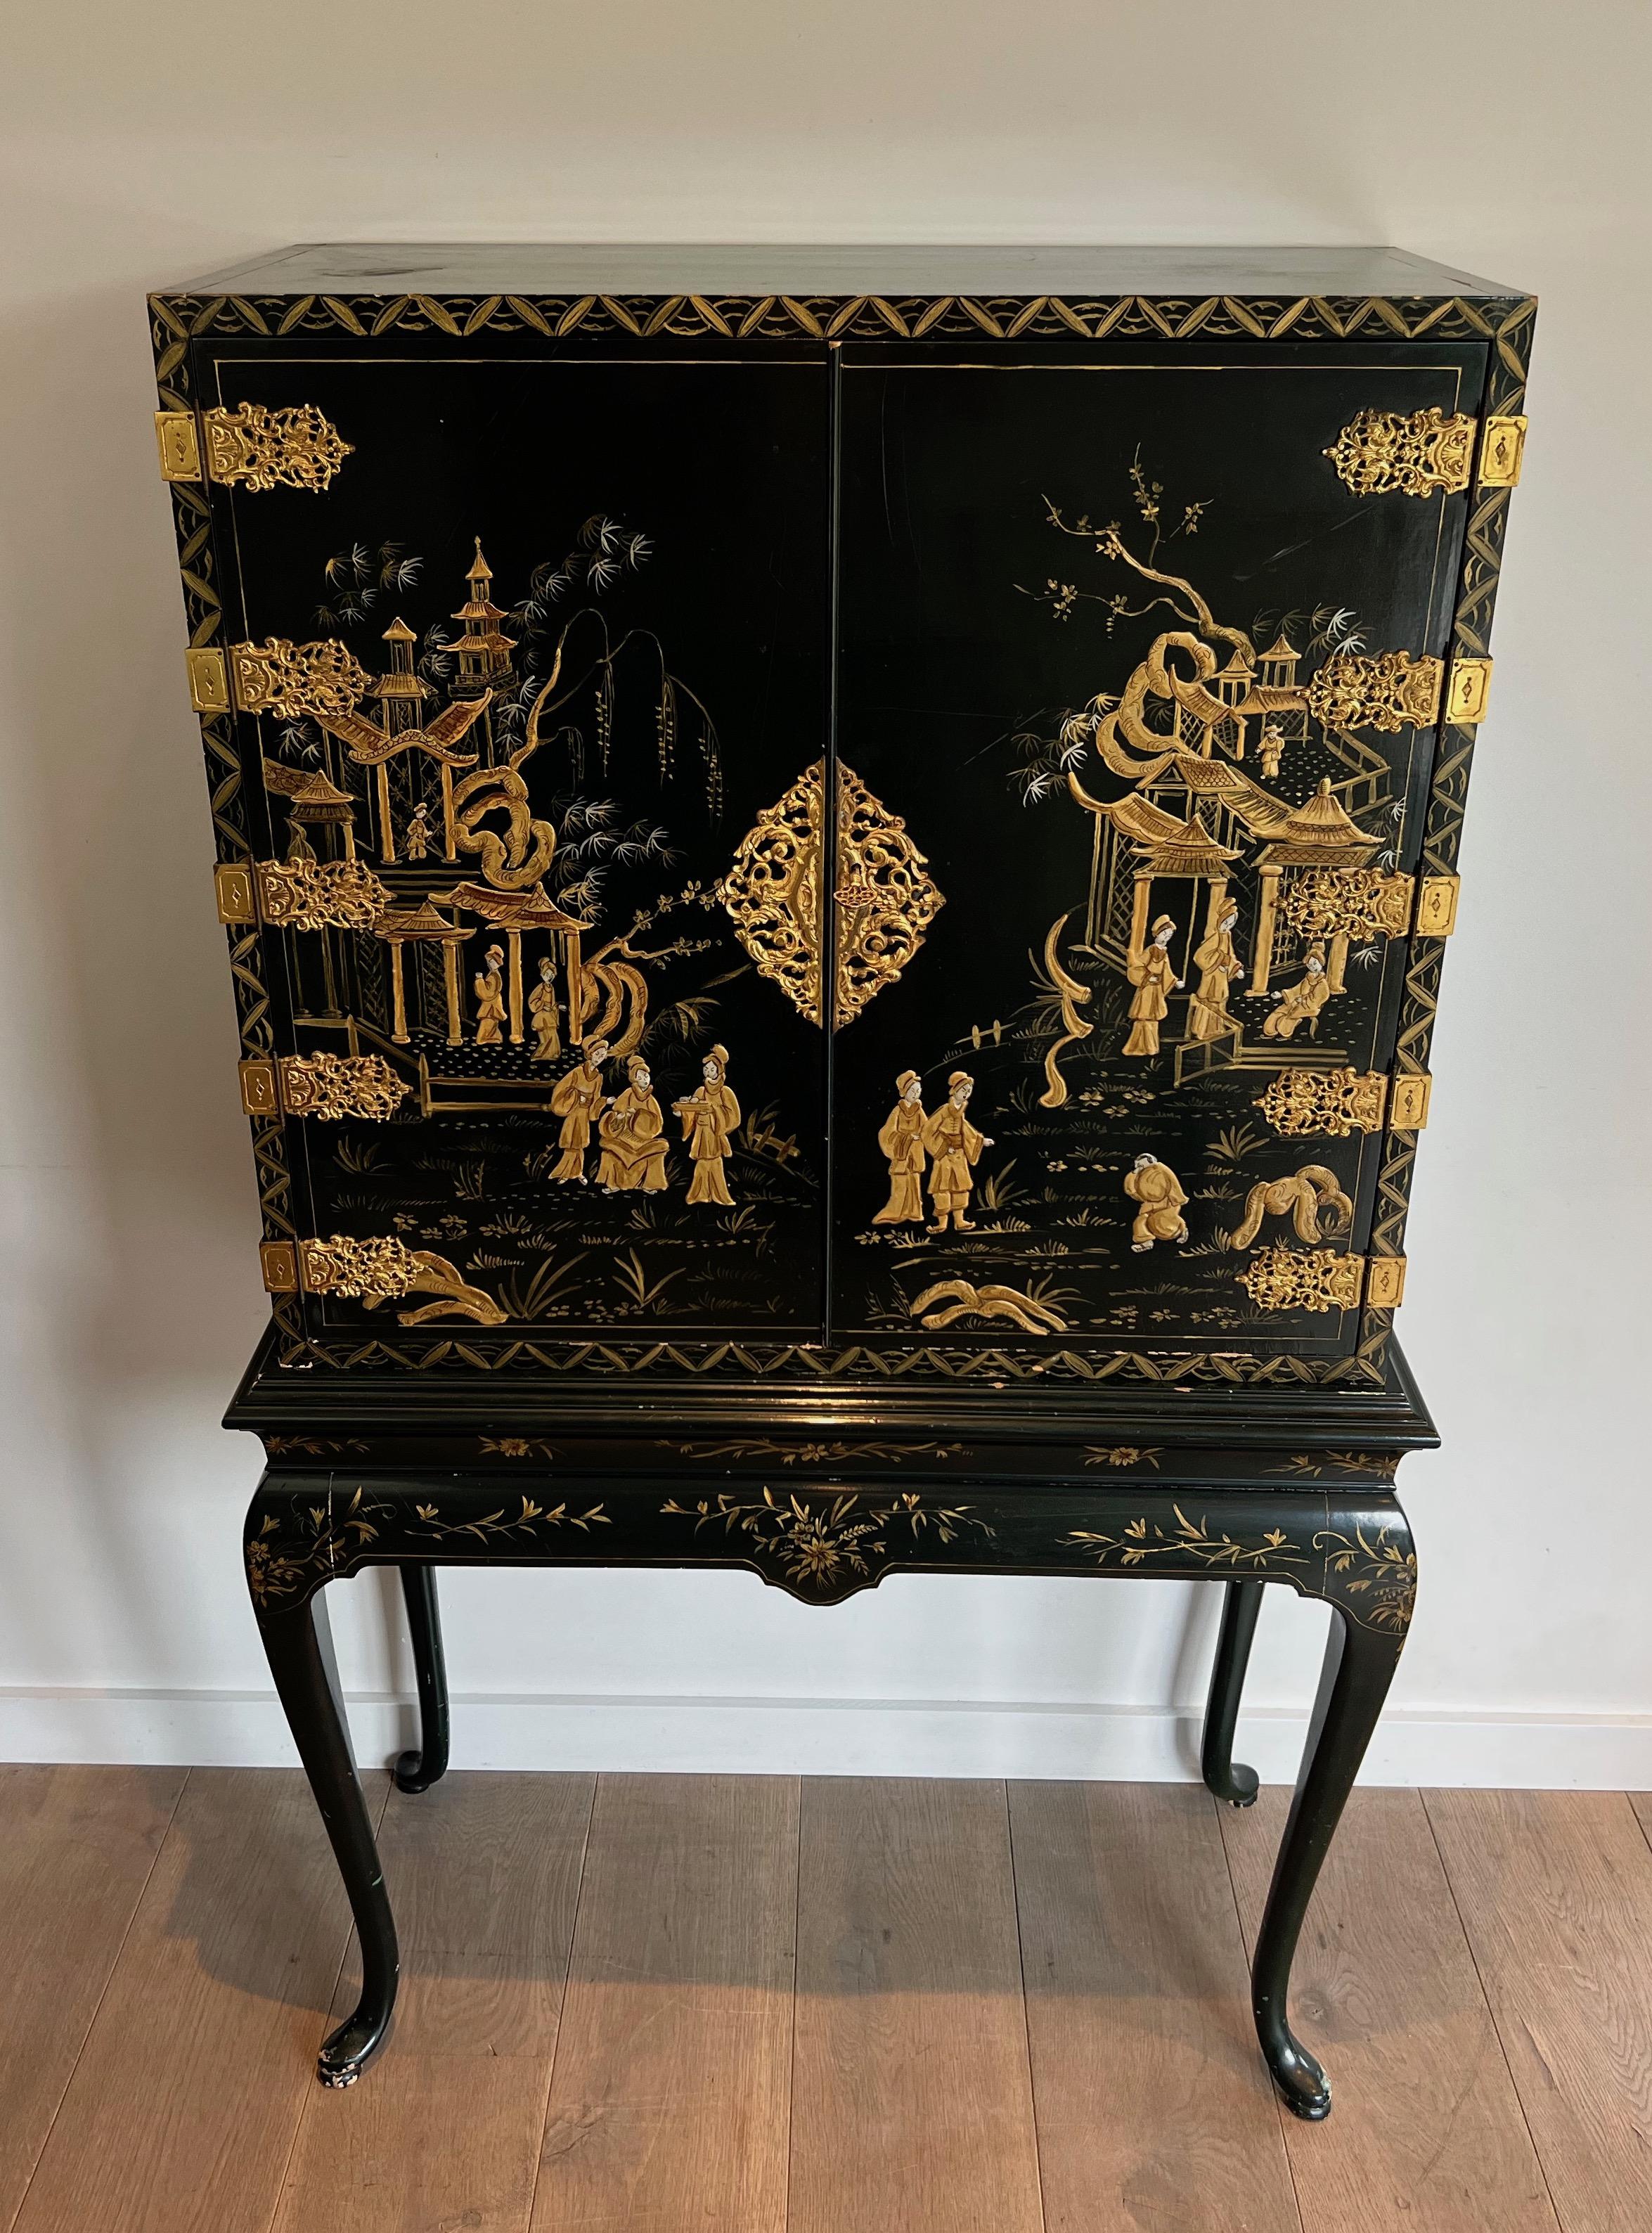 Ce meuble est en bois laqué vert avec des scènes de vie chinoises et de bronze doré. La partie intérieure est constituée de miroirs églomisés. Il s'agit d'une œuvre française, vers 1940.